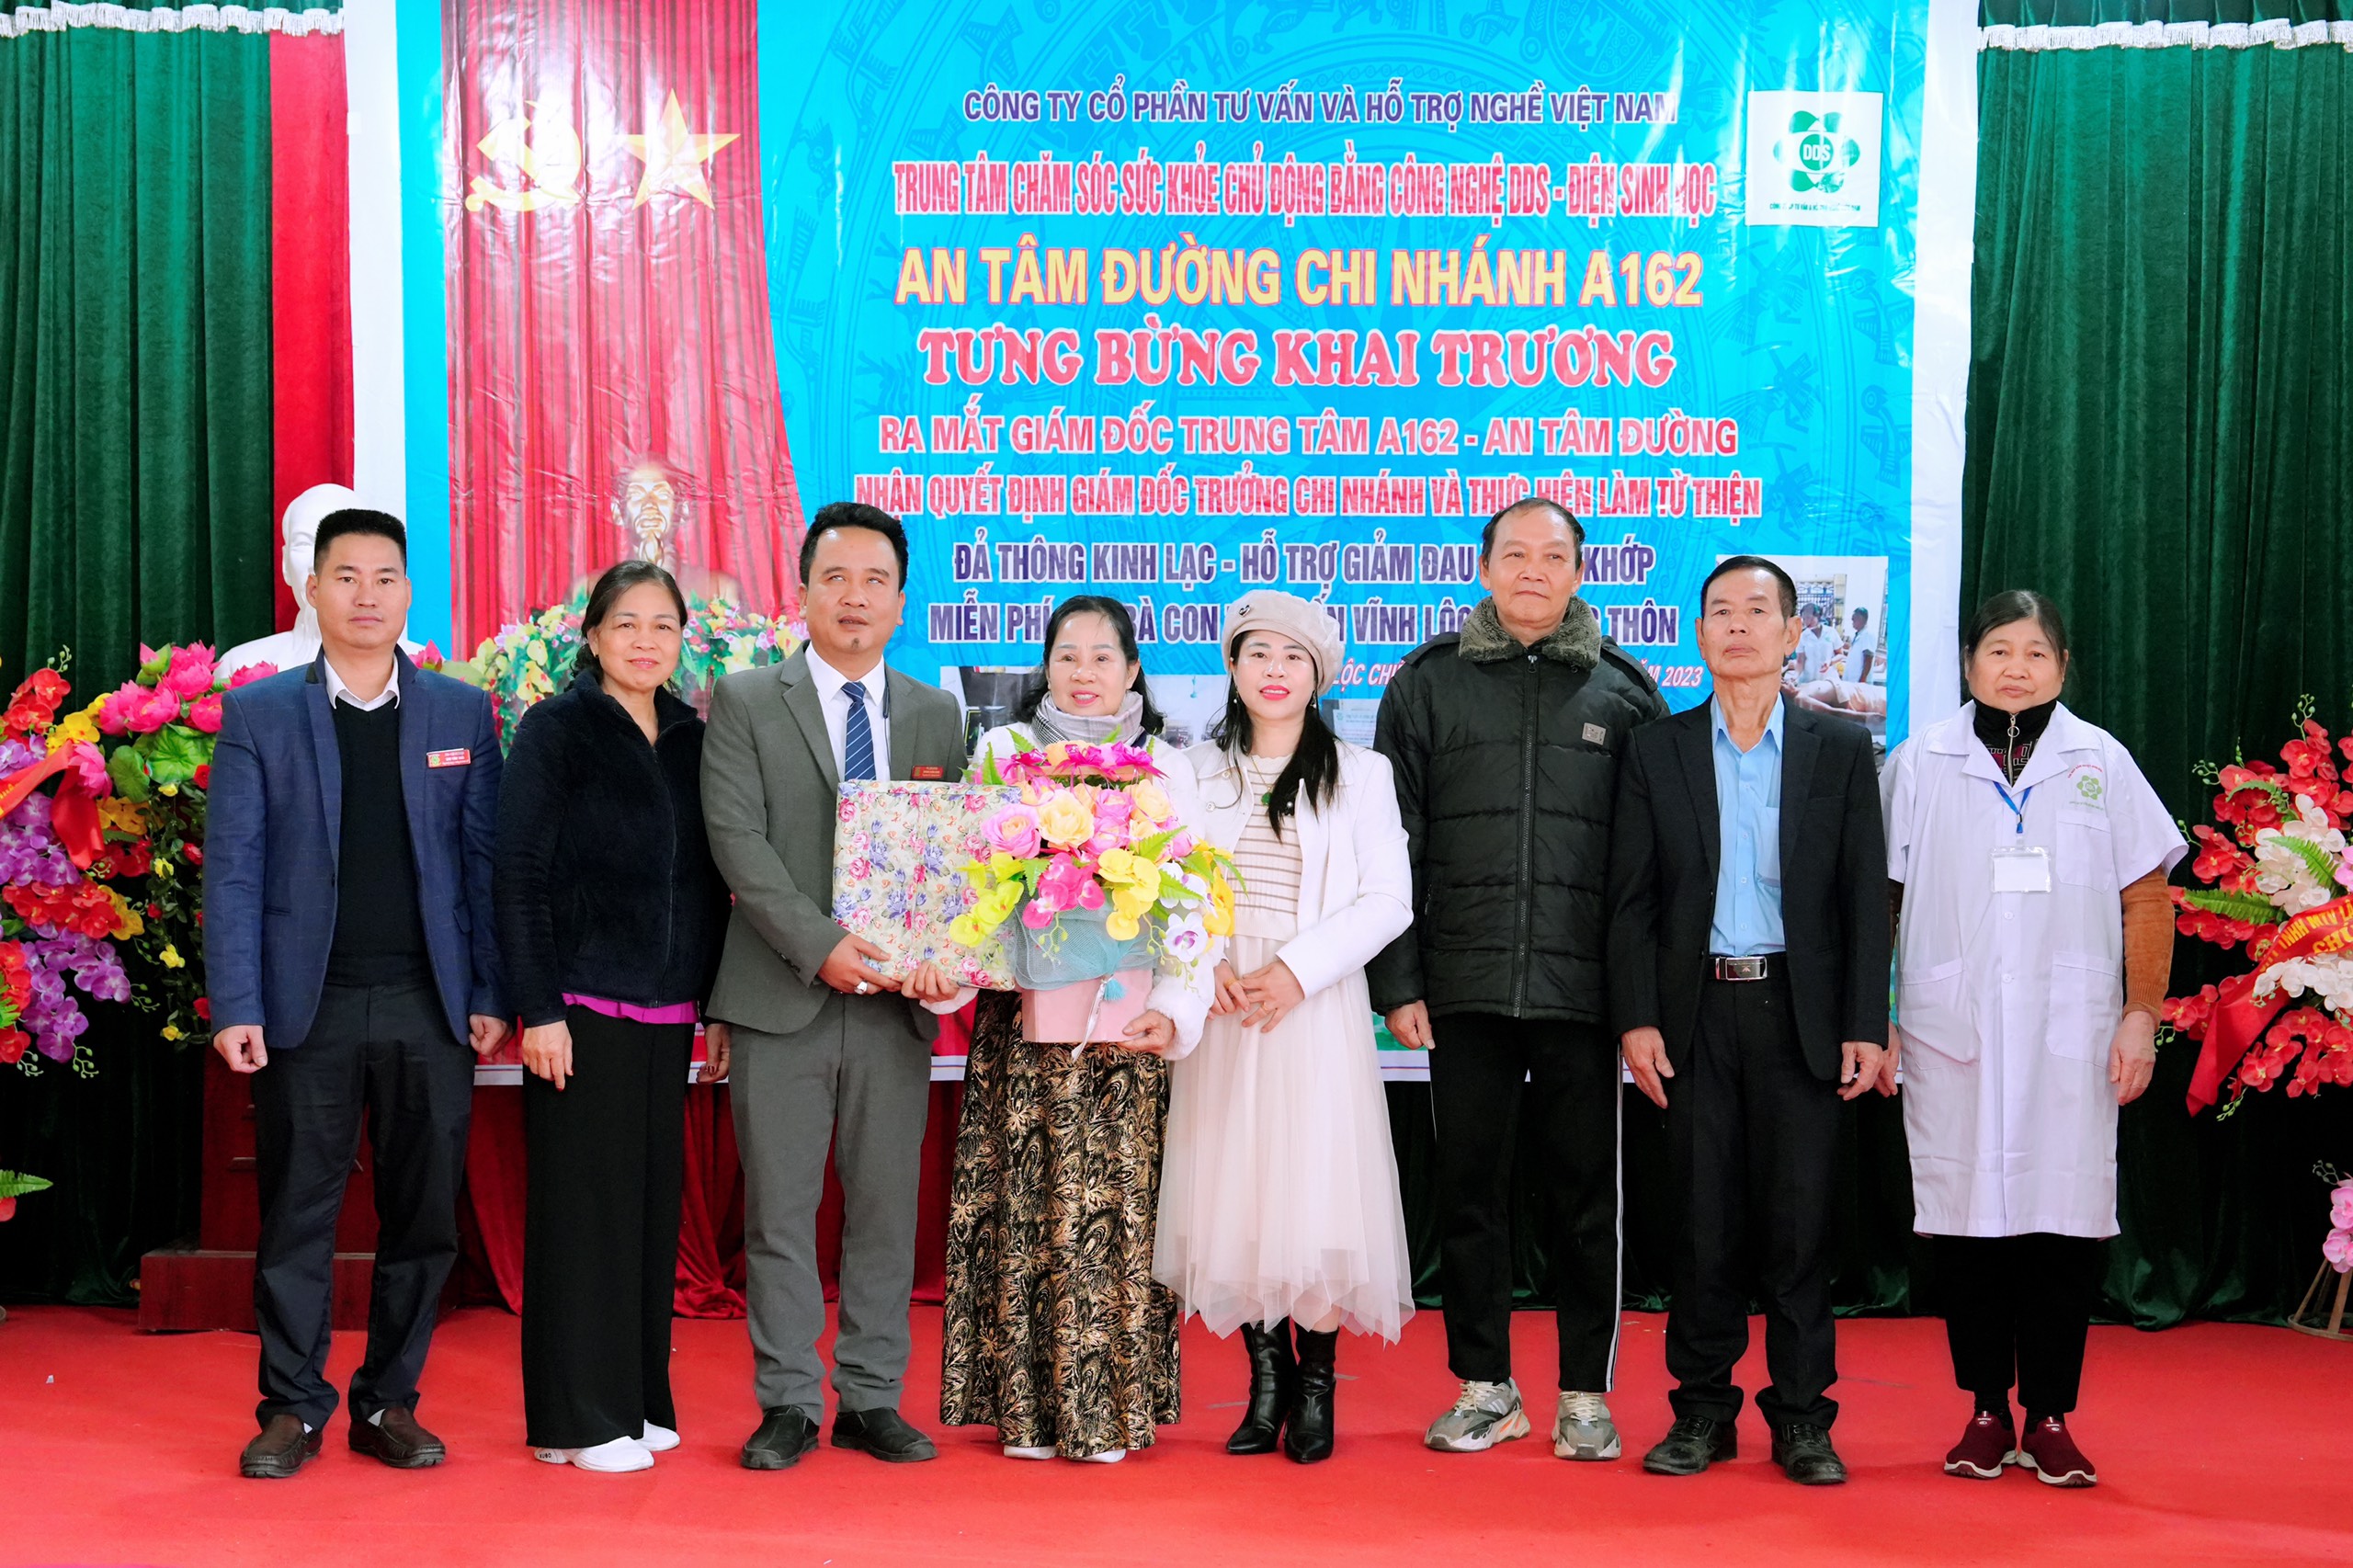 Điện sinh học DDS giải pháp mới trong chăm sóc sức khỏe cho bà con miến núi Chiêm Hóa, Tuyên Quang 